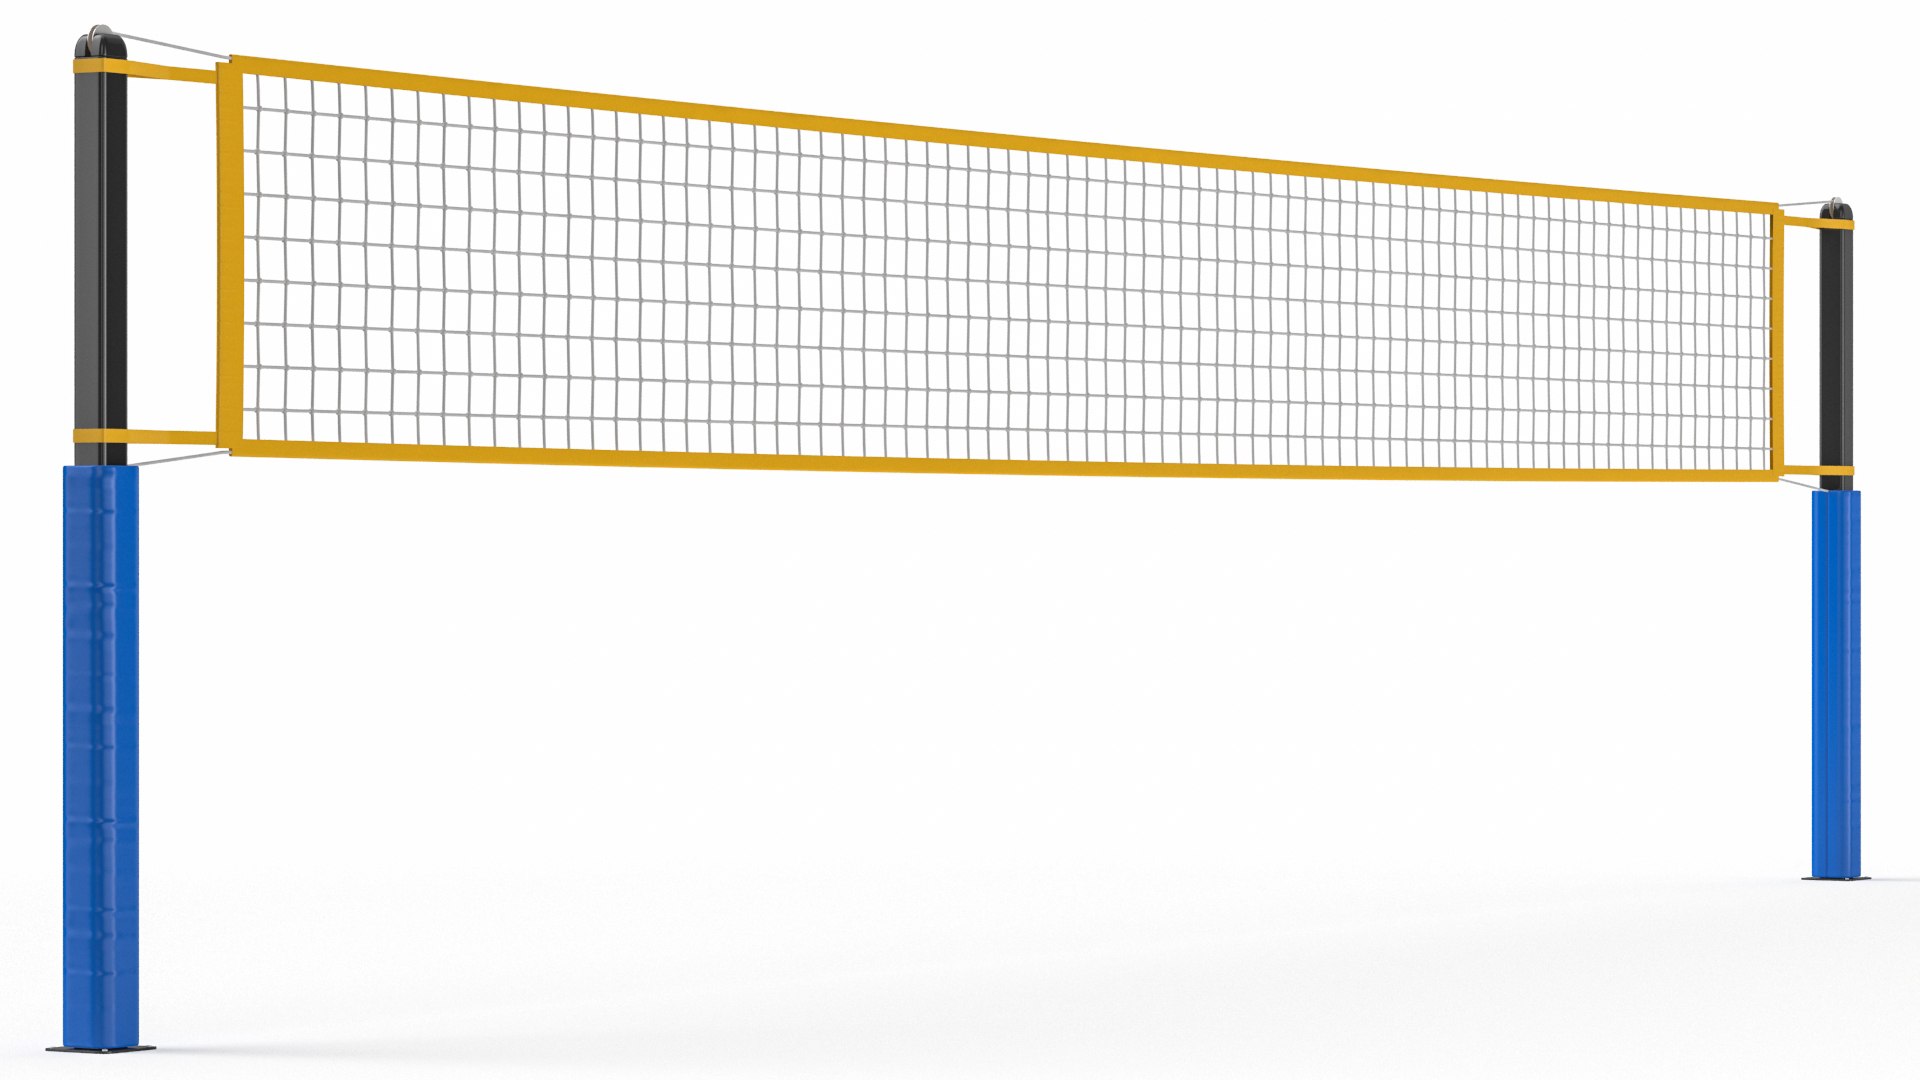 Volleyball Net 02 Model - TurboSquid 2053690